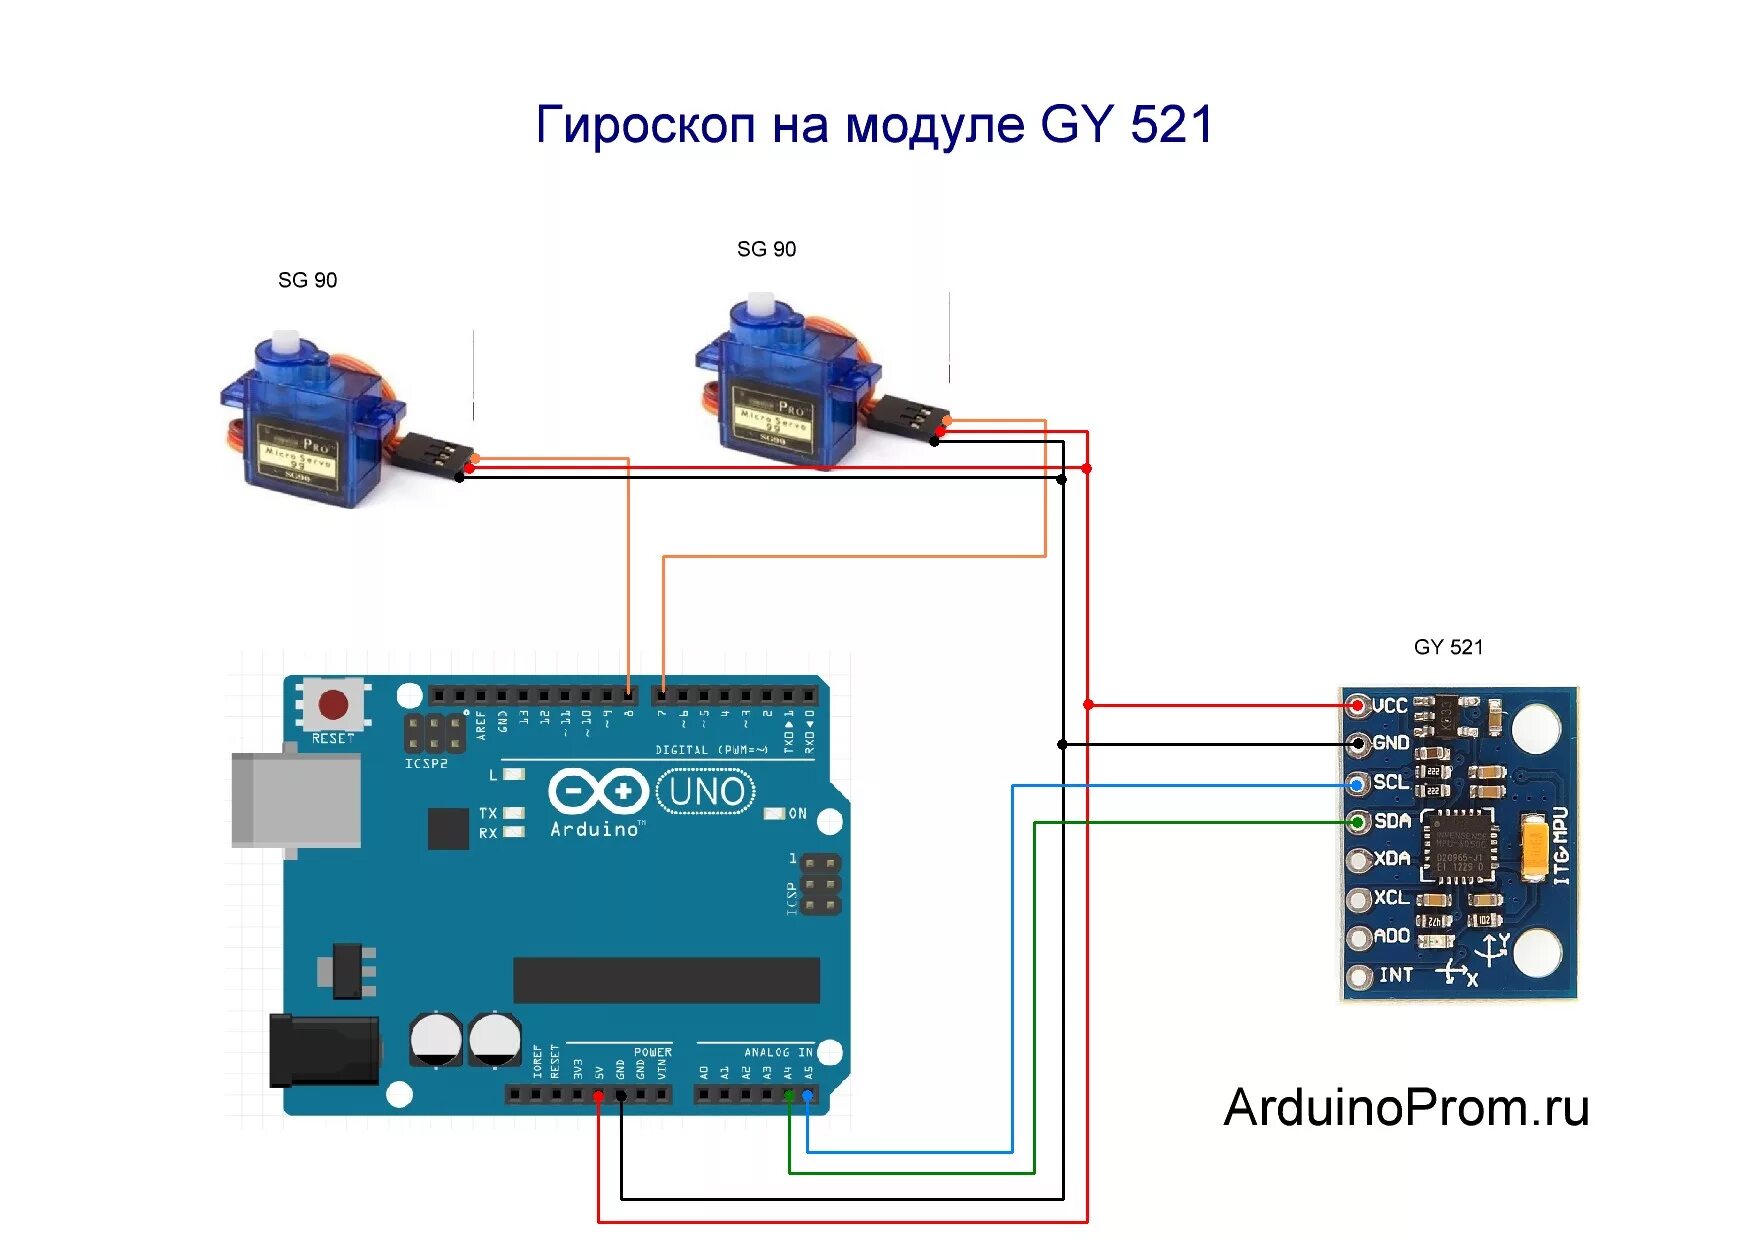 Приложение для гироскопа. Модуль GY-521. GY-521 Arduino. Акселерометр GY-521. Гироскоп GY-521 ардуино.